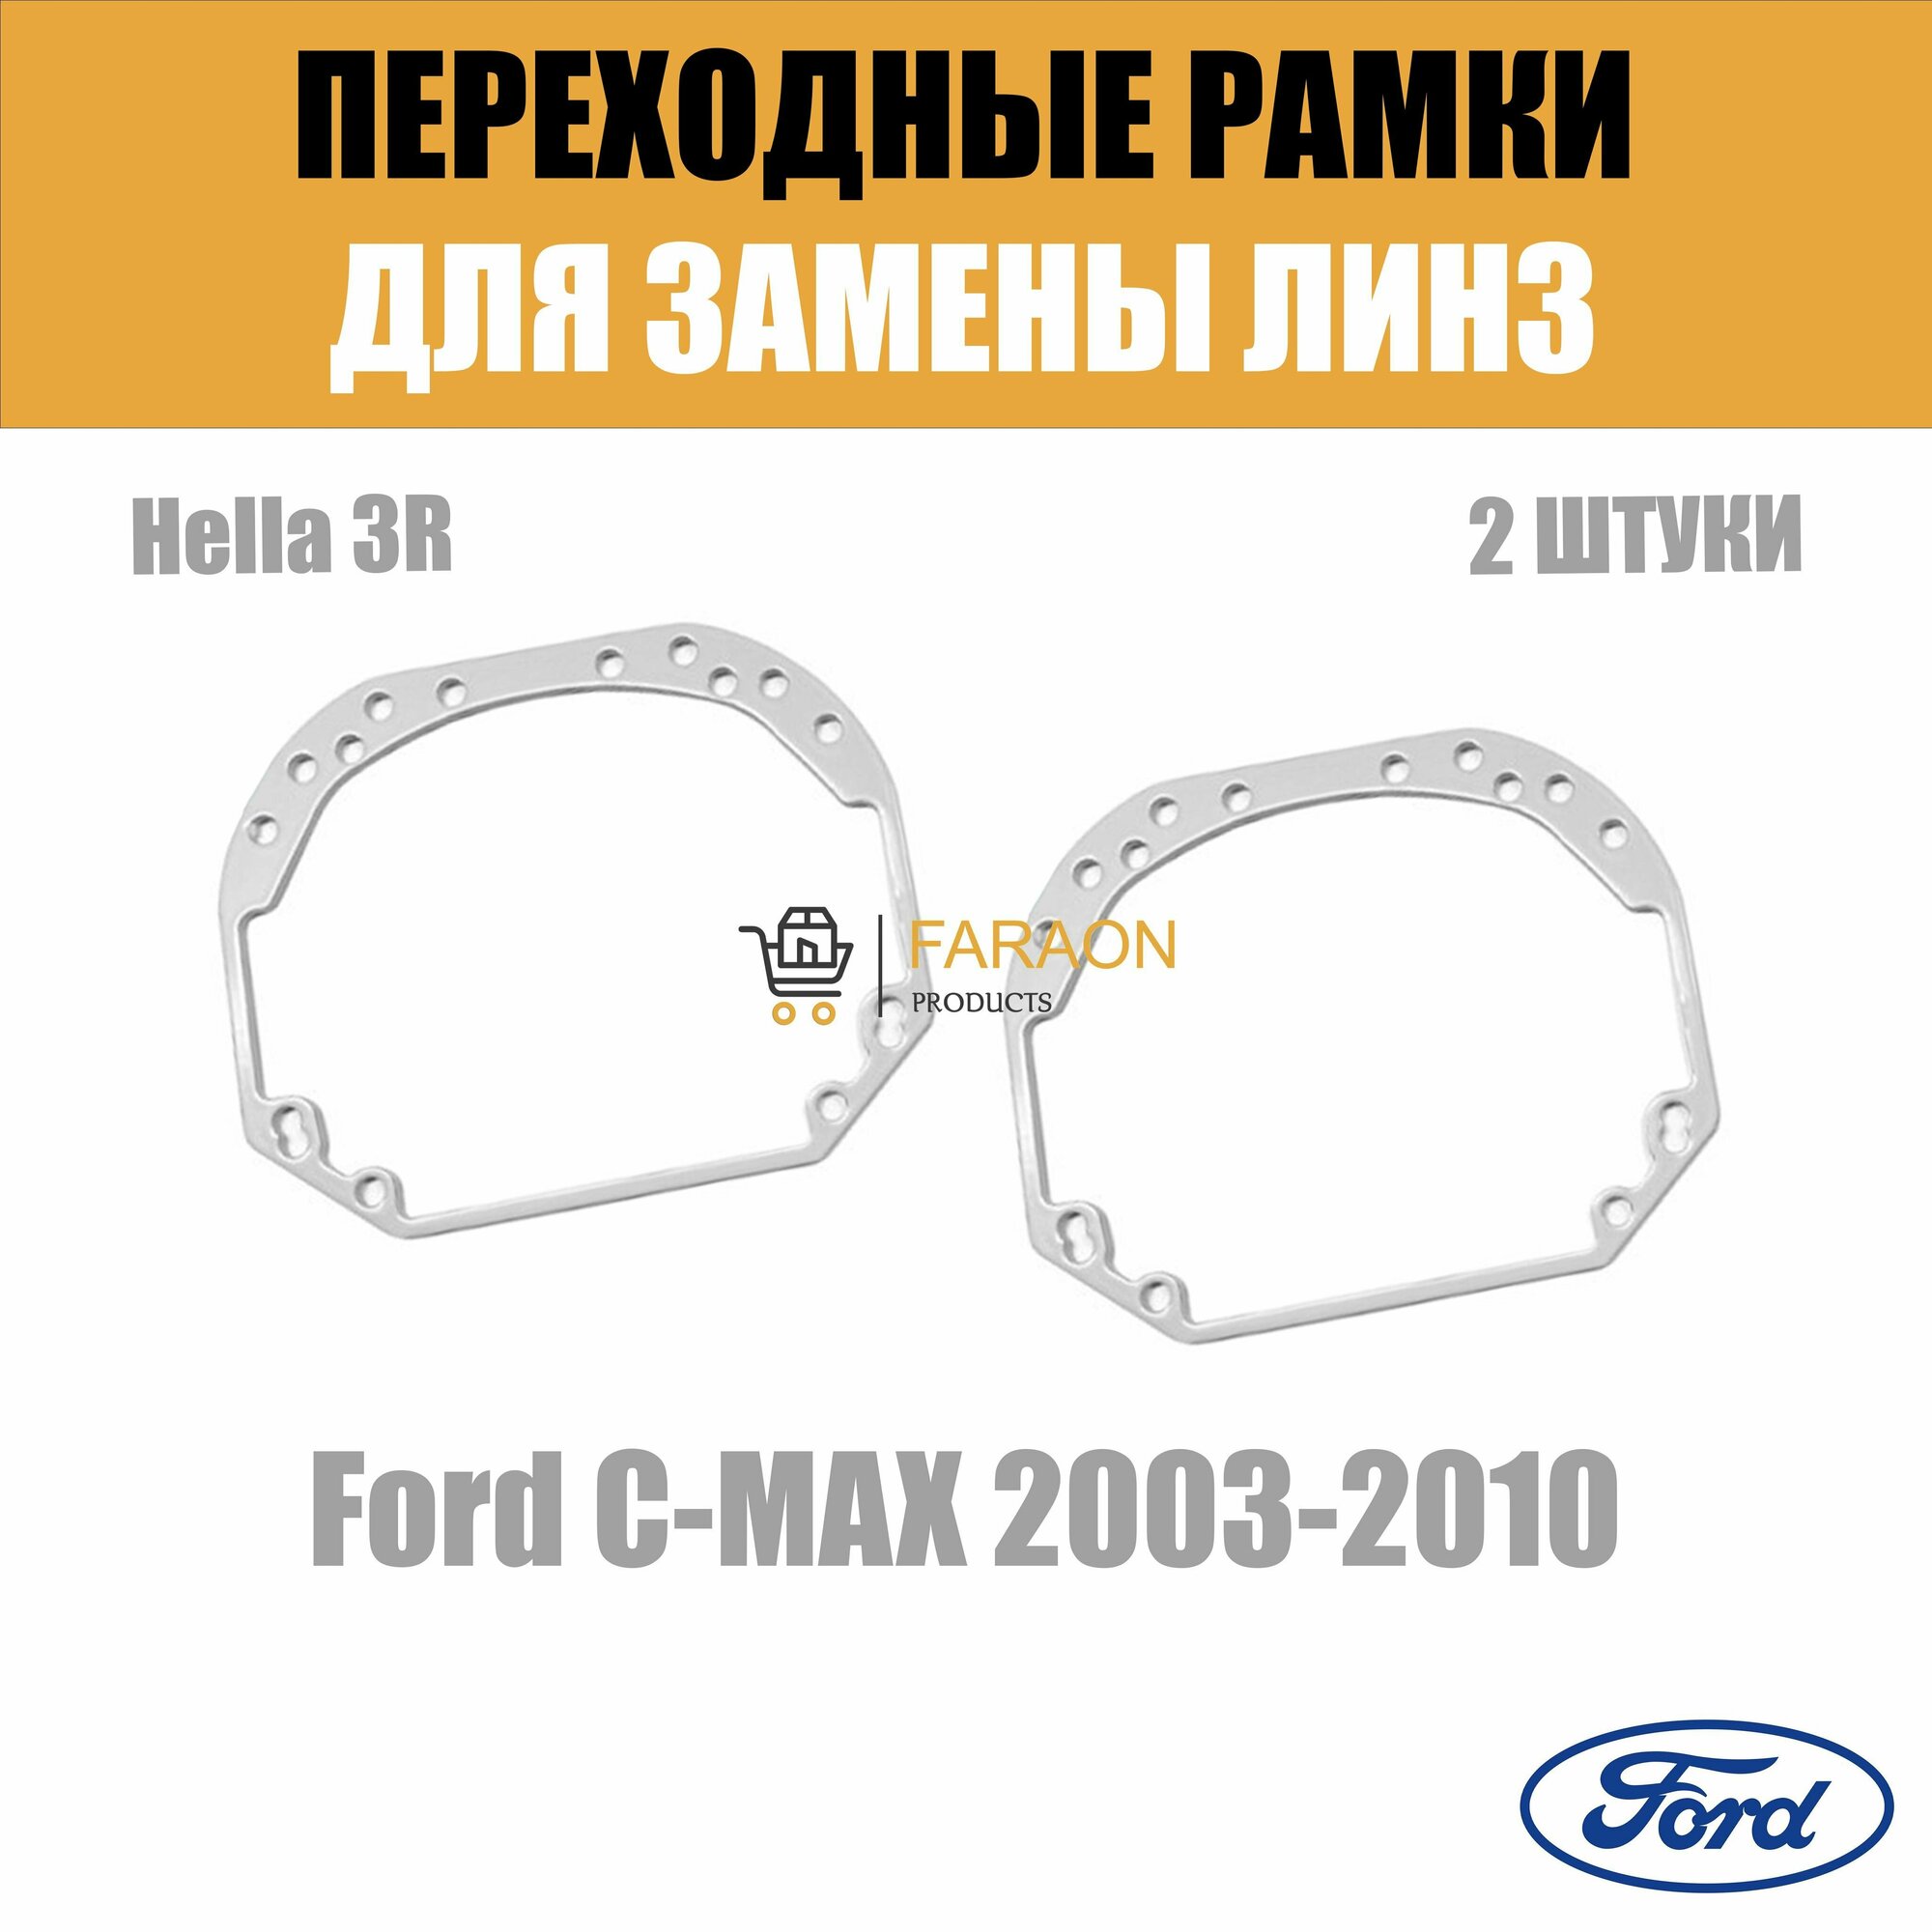 Переходные рамки для замены линз в фарах №1 Ford C-MAX 2003-2010 Крепление Hella 3R